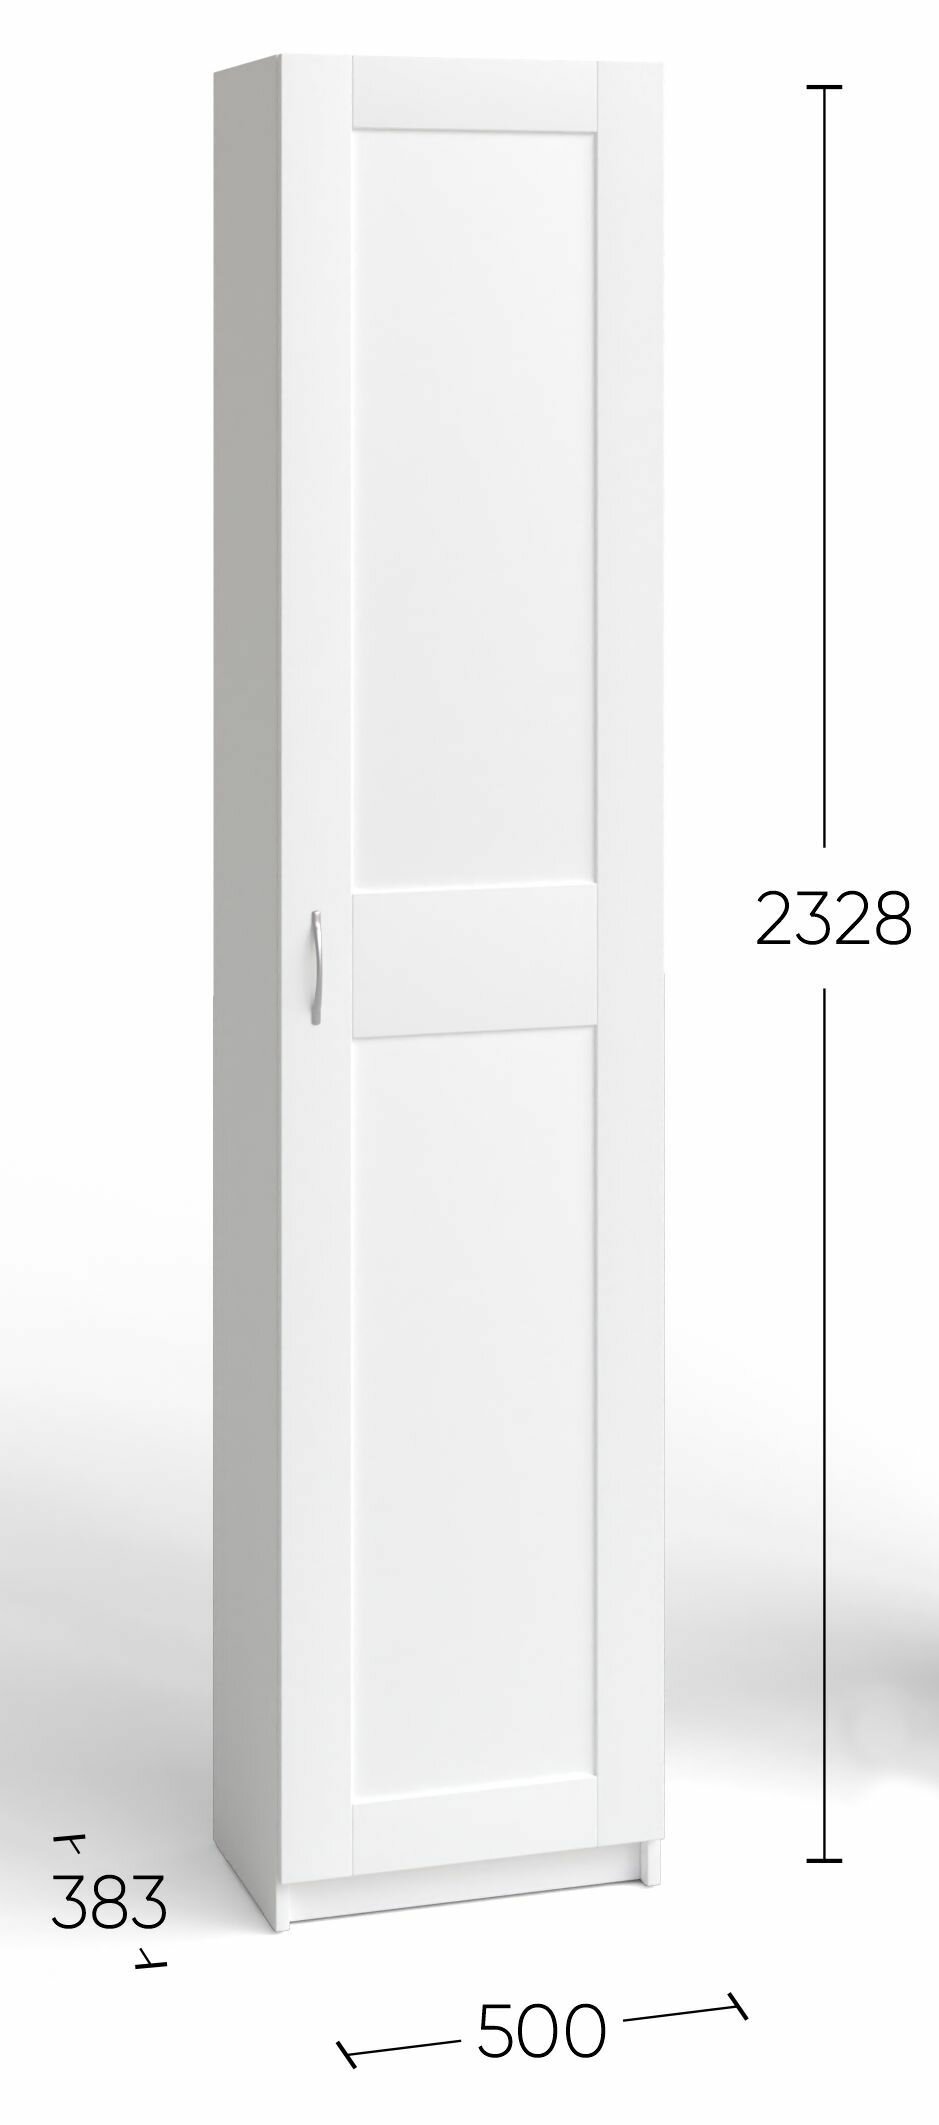 Шкаф ГУД ЛАКК Макс, 1 дверь, 50х38х233 см, дуб венге